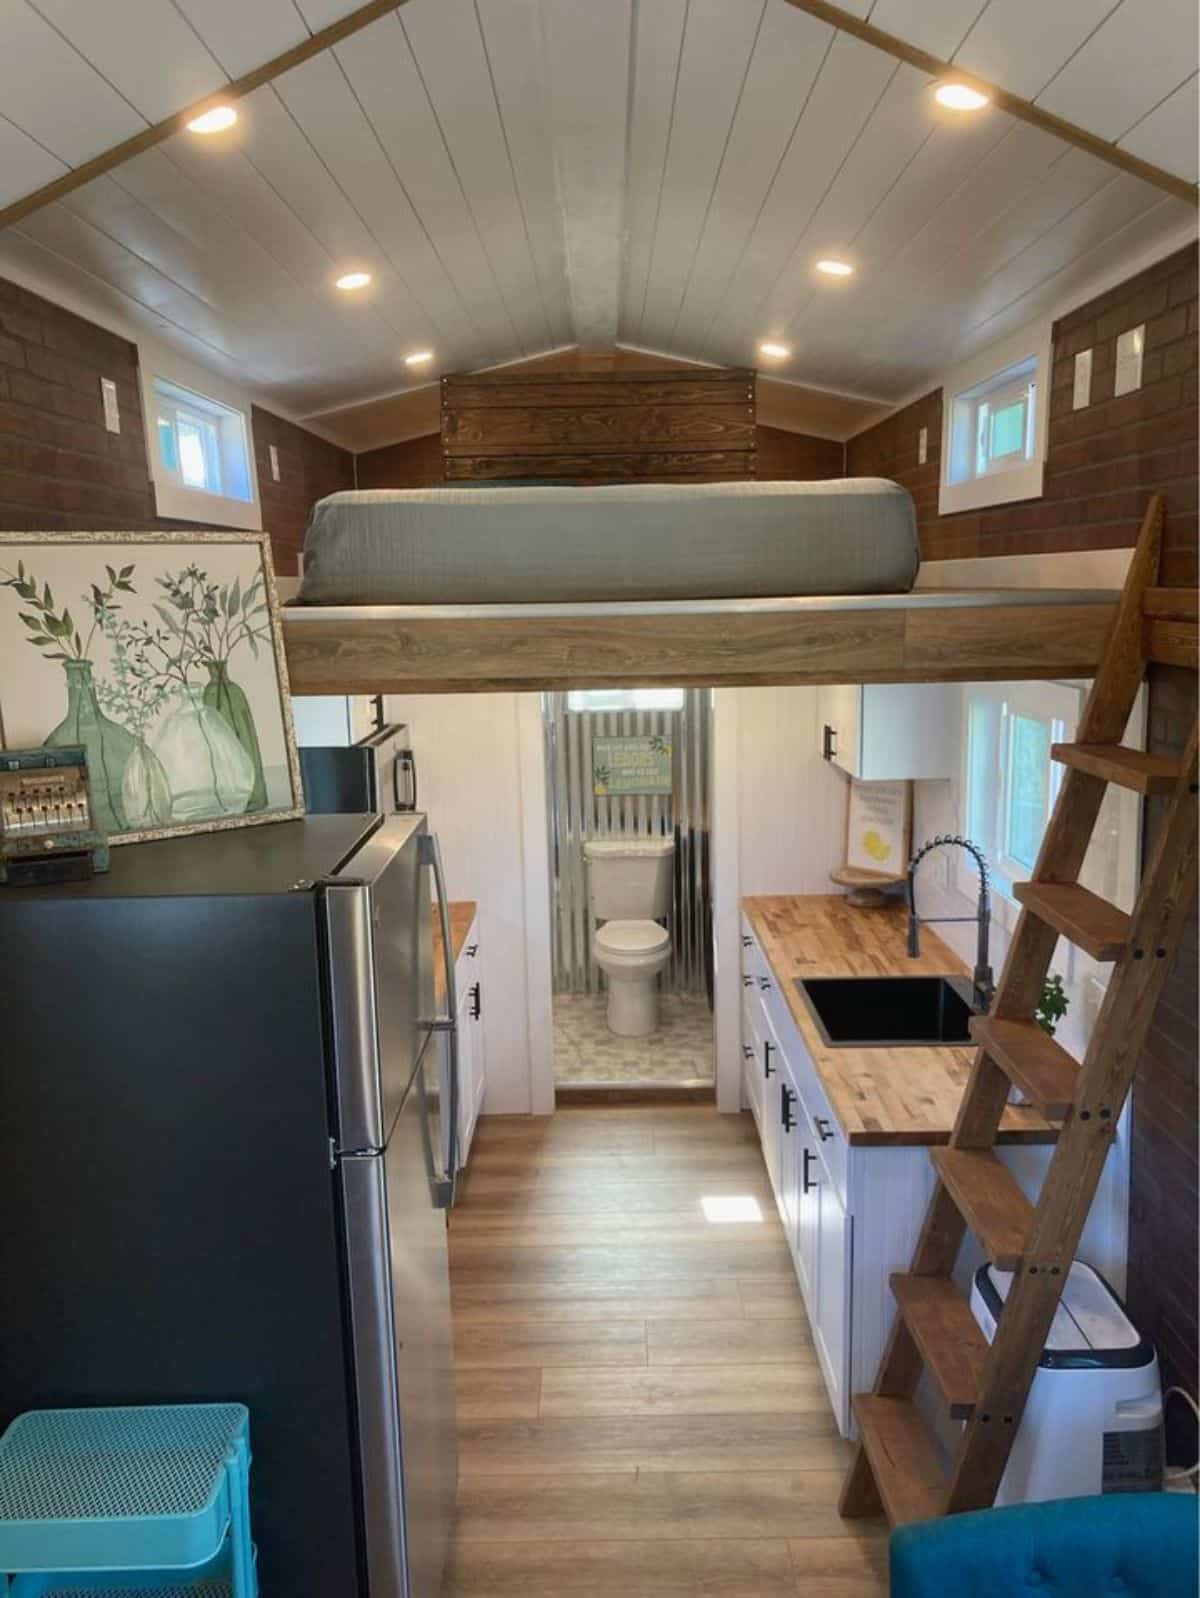 Full length interiors of 24' turnkey ready tiny home